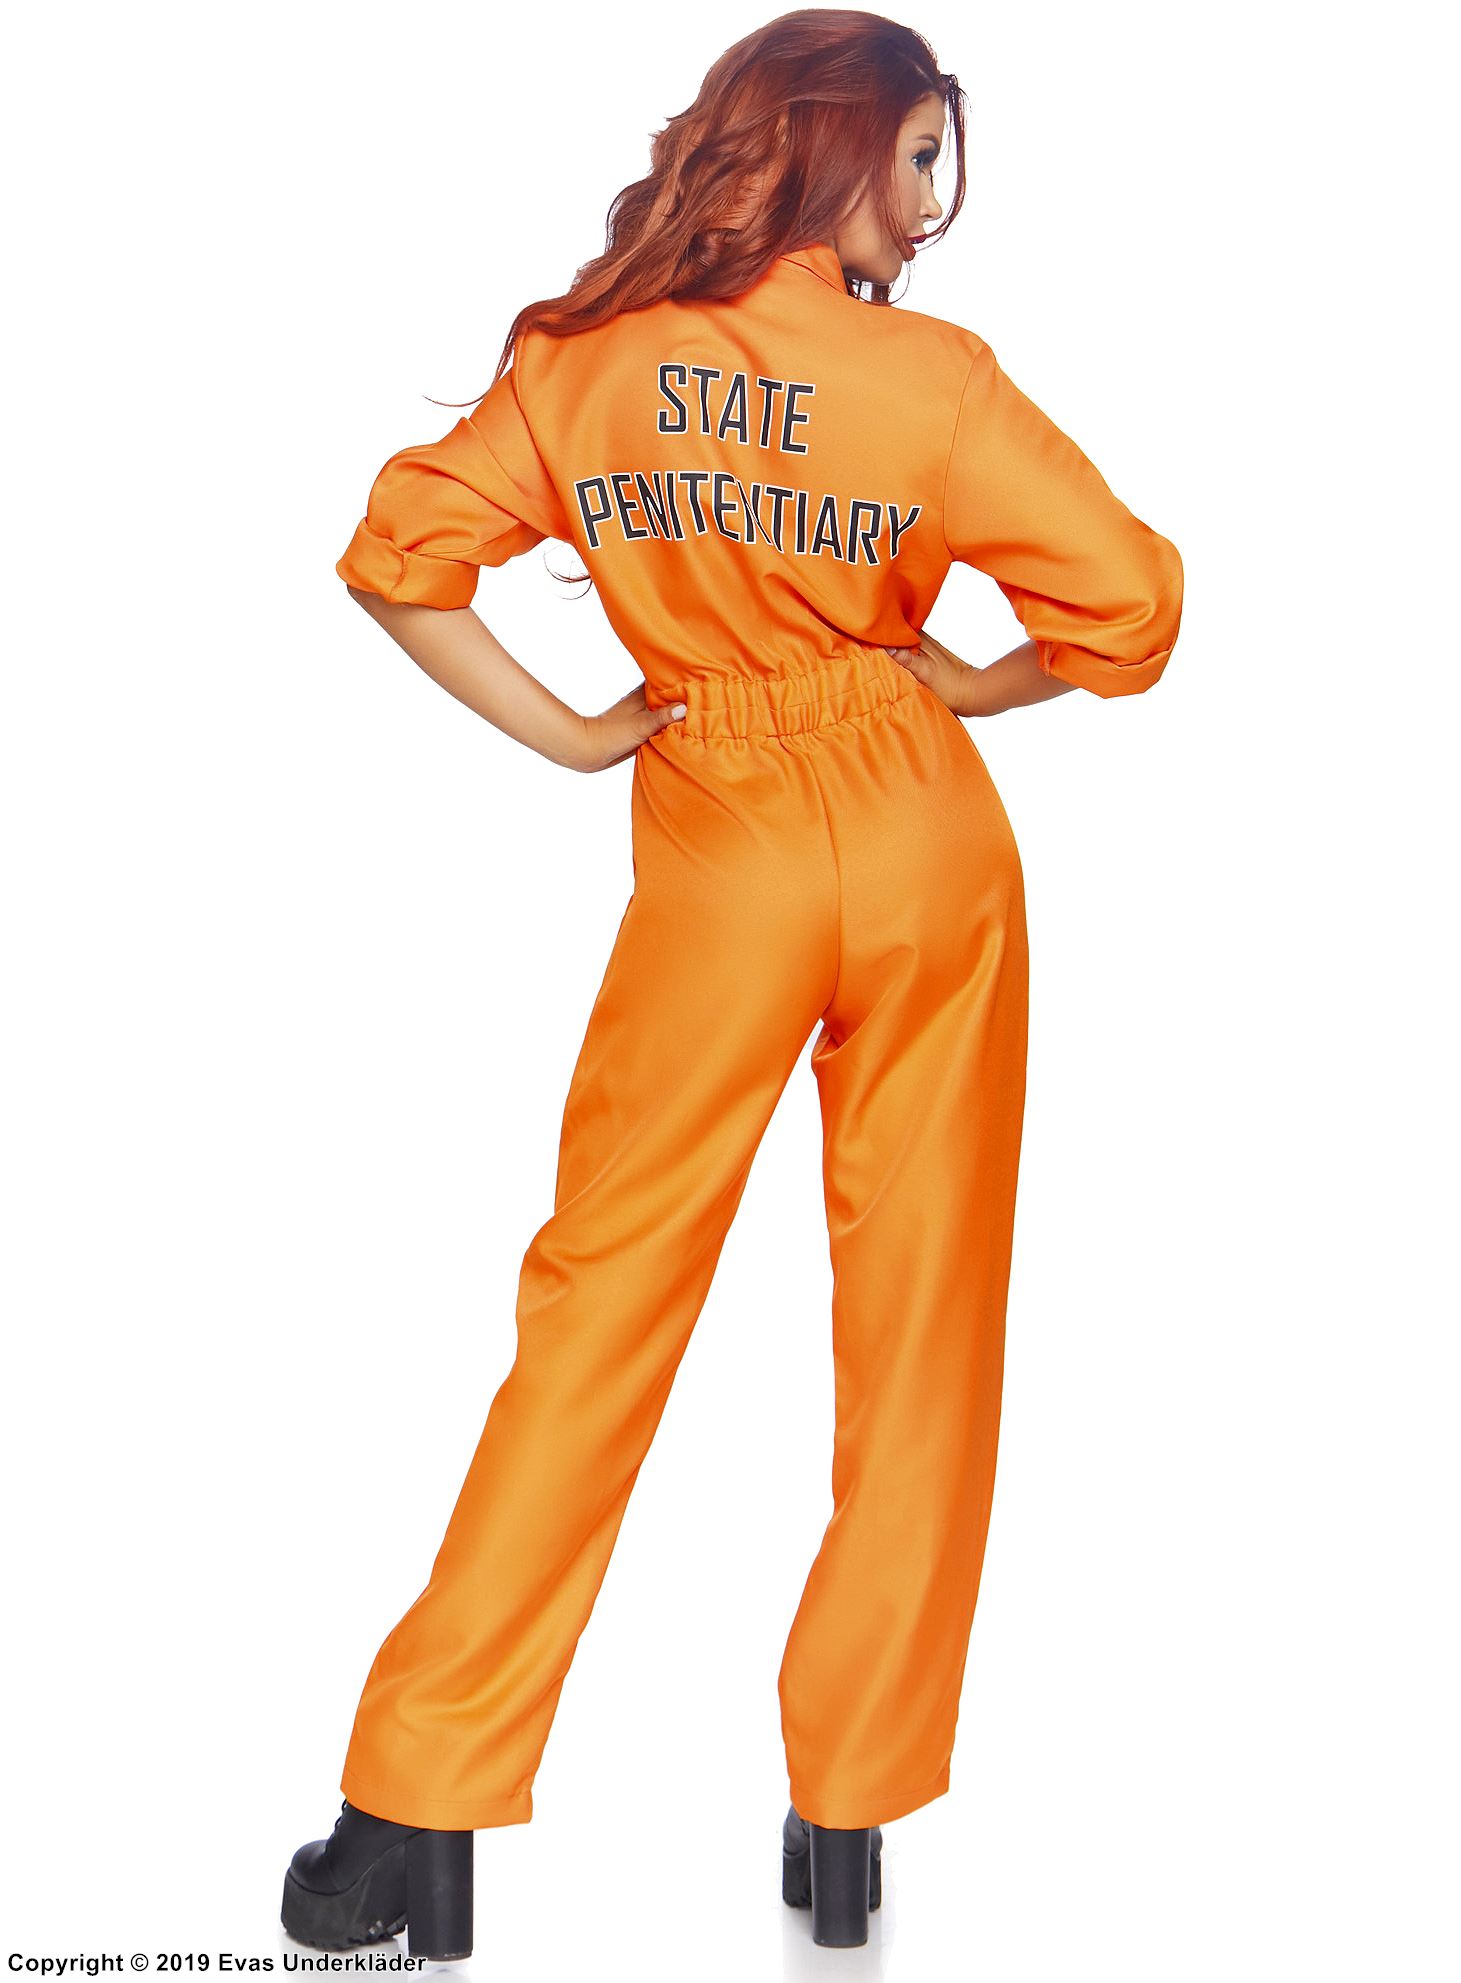 Female prisoner, costume jumpsuit